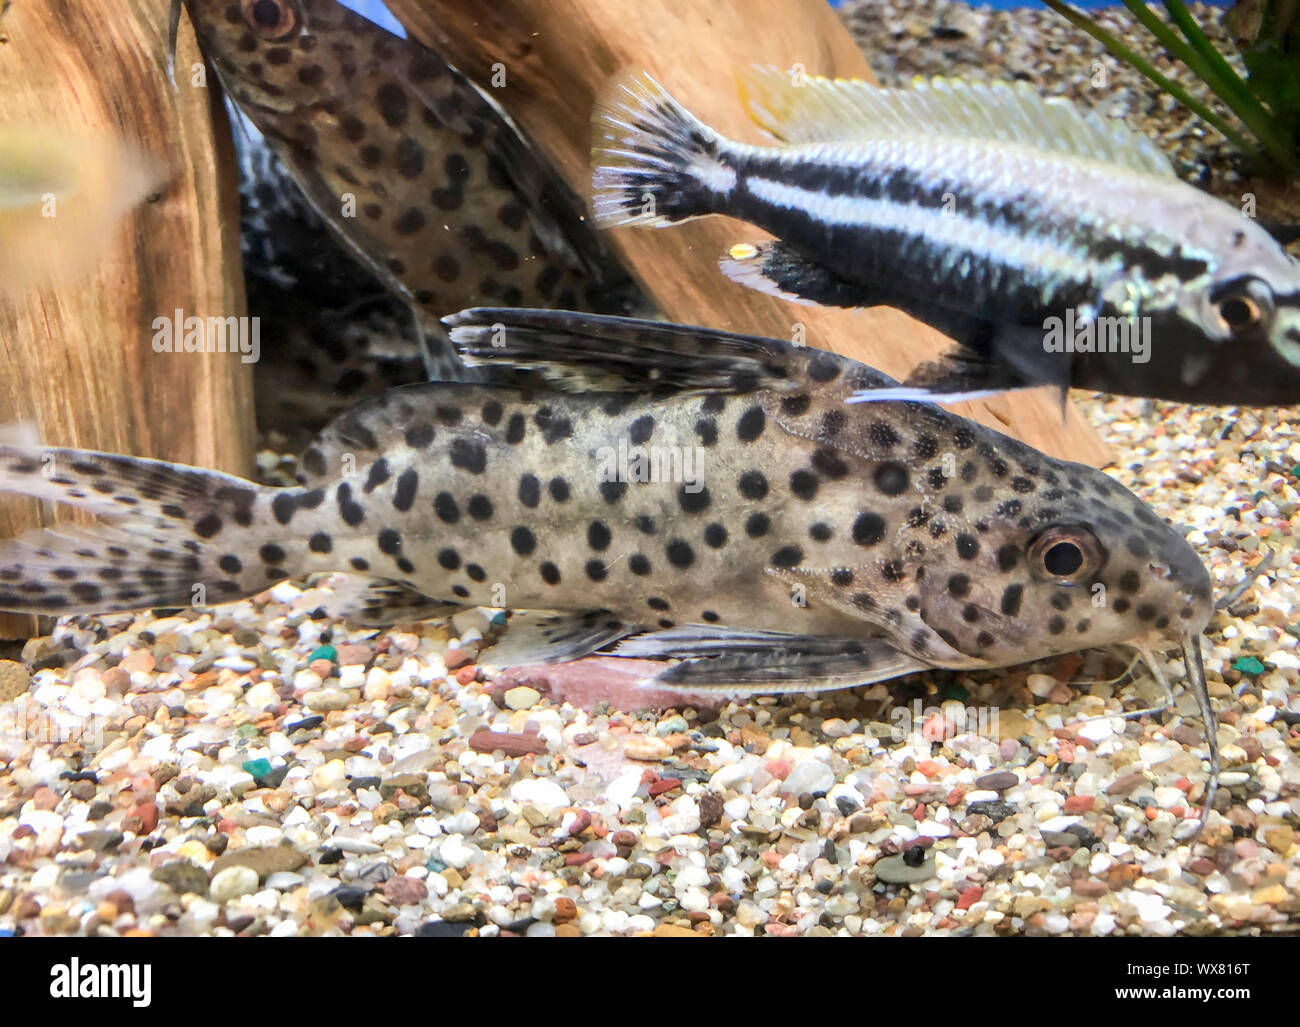 Armored catfish in the aquarium Stock Photo